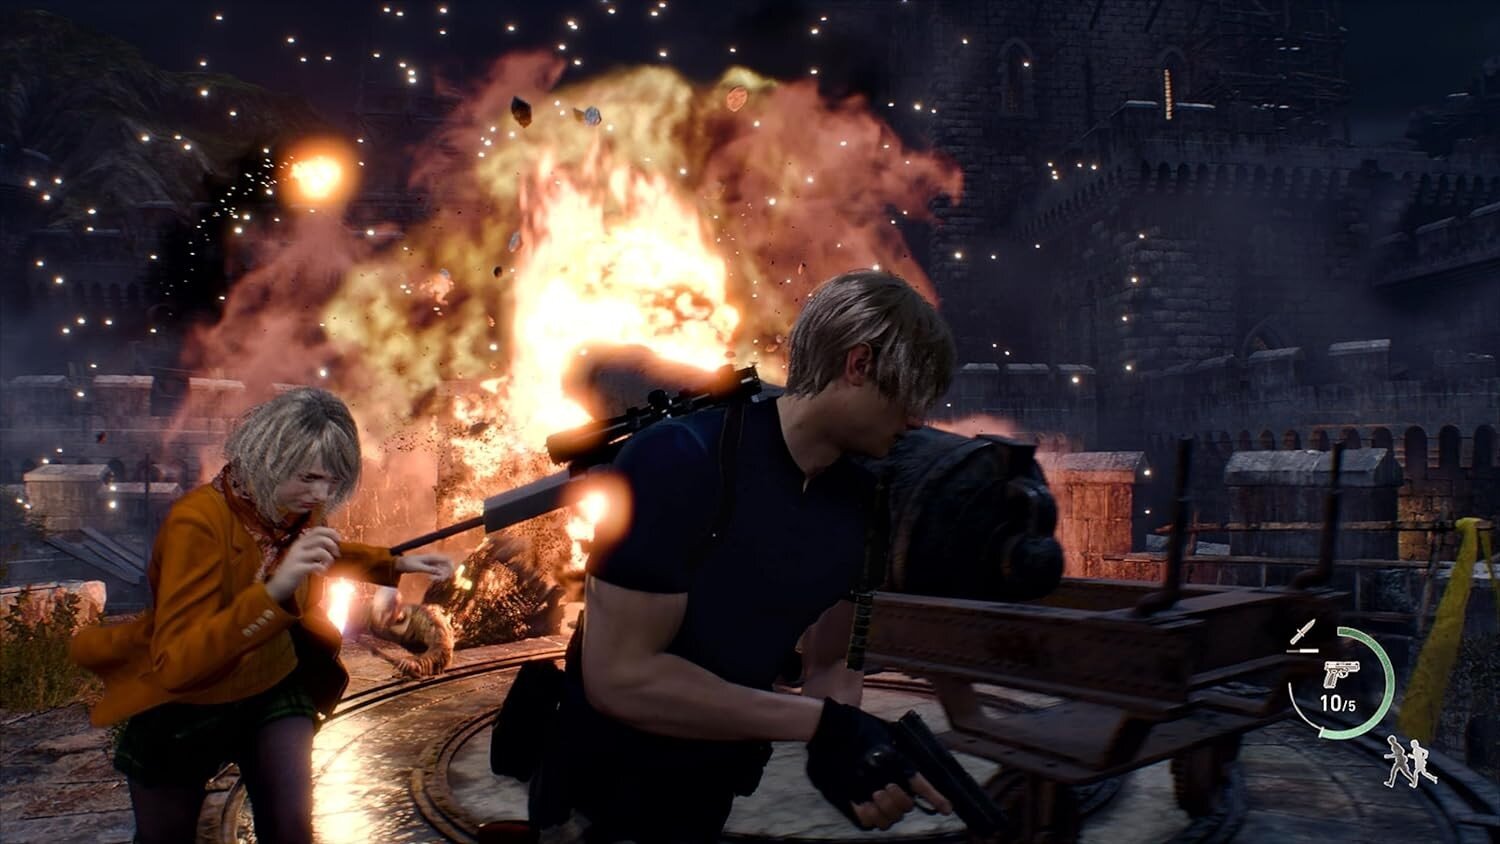 Resident Evil 4 Gold Edition Xbox Series X kaina ir informacija | Kompiuteriniai žaidimai | pigu.lt